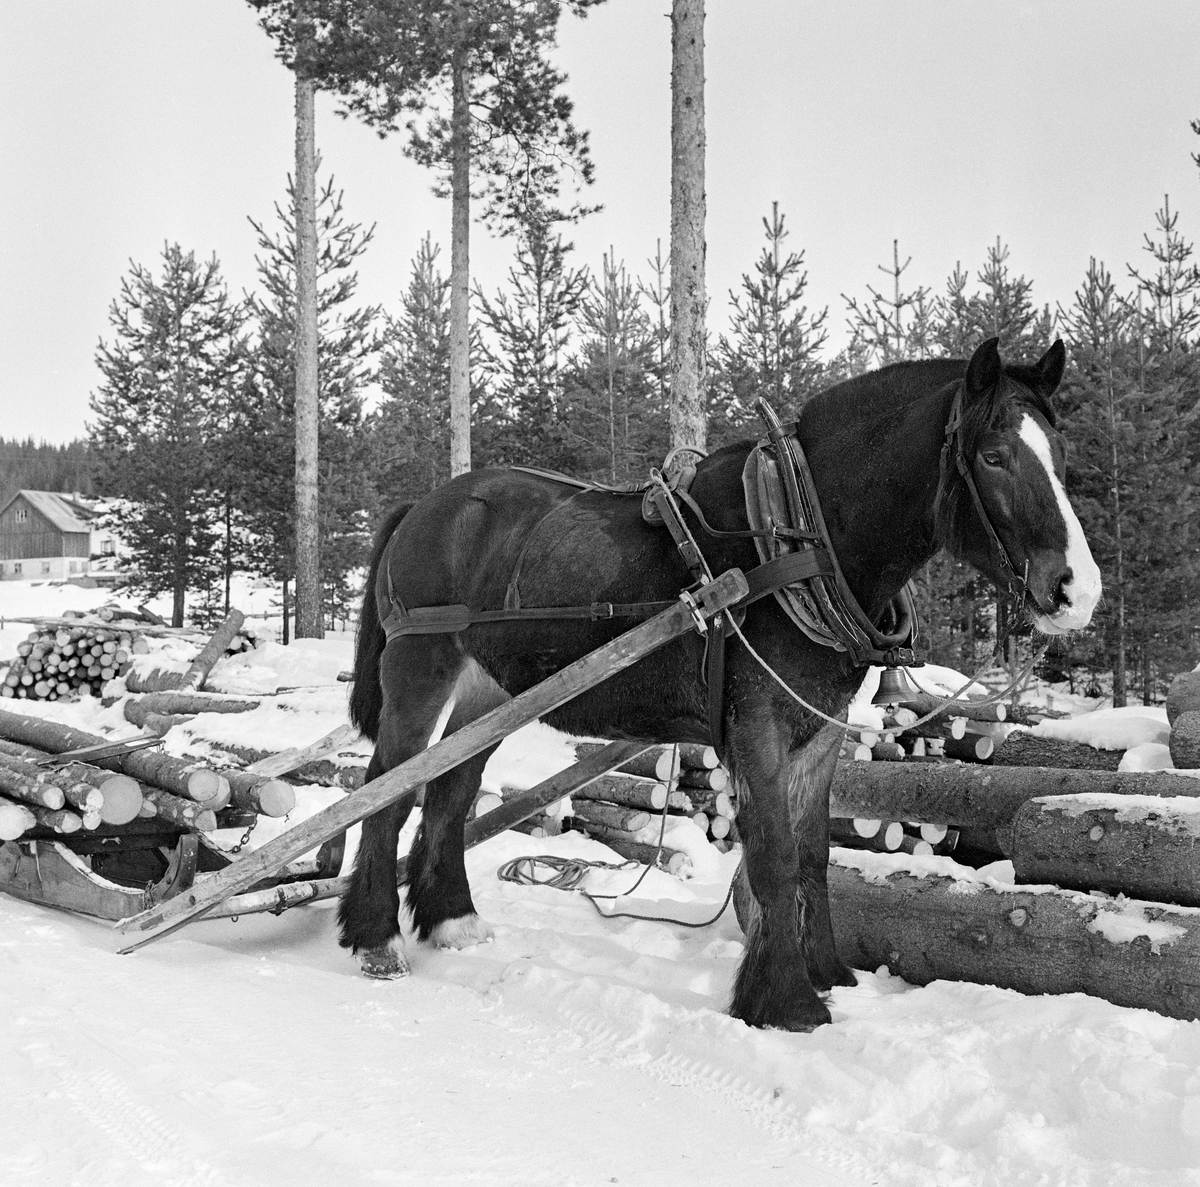 Tømmerhest, fotografert under kjøring i Stavåsen i Elverum vinteren 1971.  Hesten er fotografert skrått forfra på et tidspunkt da den sto stille ved en velteplass ved veg.  Den har arbeidssele og er forspent en tømmerrustning (bukk og geit), hvor det lå noen få, ubarkete granstokker da dette fotografiet ble tatt.  Det var seletøyet som gjorde det mulig å trekke, bremse og rygge med hesten.  Dette er en bogtresele med ei stoppet ringpute, som er tredd over hodet på hesten slik at den ligger an mot nakken og bringen på trekkdyret.  Derfra går det kraftige drotter (draglær) til orringen, som er plassert i krysningspunktet mellom bukgjorden, bærereimene fra høvret og bakselen.  Bakselen, som ble ført horisontalt fra orringene bakover sidene og rundt øvre del av lårene, var nødvendig for at hesten skulle kunne «holde igjen» i utforbakker.  Hesten ble styrt ved hjelp av tømmer, som er forankret i et munnbitt.  Tømmene ble ført gjennom ringene på høvret, og de var så lange at kjørekaren kunne betjene dem fra en posisjon på tømmerlasset.  Her, hvor lessinga ikke var avsluttet, lå tømmene i snøen ved siden av hesten.  Her ble tømmeret transportert på rustning, et todelt framkjøringsredskap, der den fremre sleden ble kalt bukk og den bakre geit.  Bukken hadde en dreibar bank, som tømmeret ble lagt på.  Dette bidro til at sleden ble fleksibel på svingete og staupete hesteveger i skogsterrenget.  Den noe kraftigere geita, som hadde sidemeier, ser vi ikke på dette fotografiet.